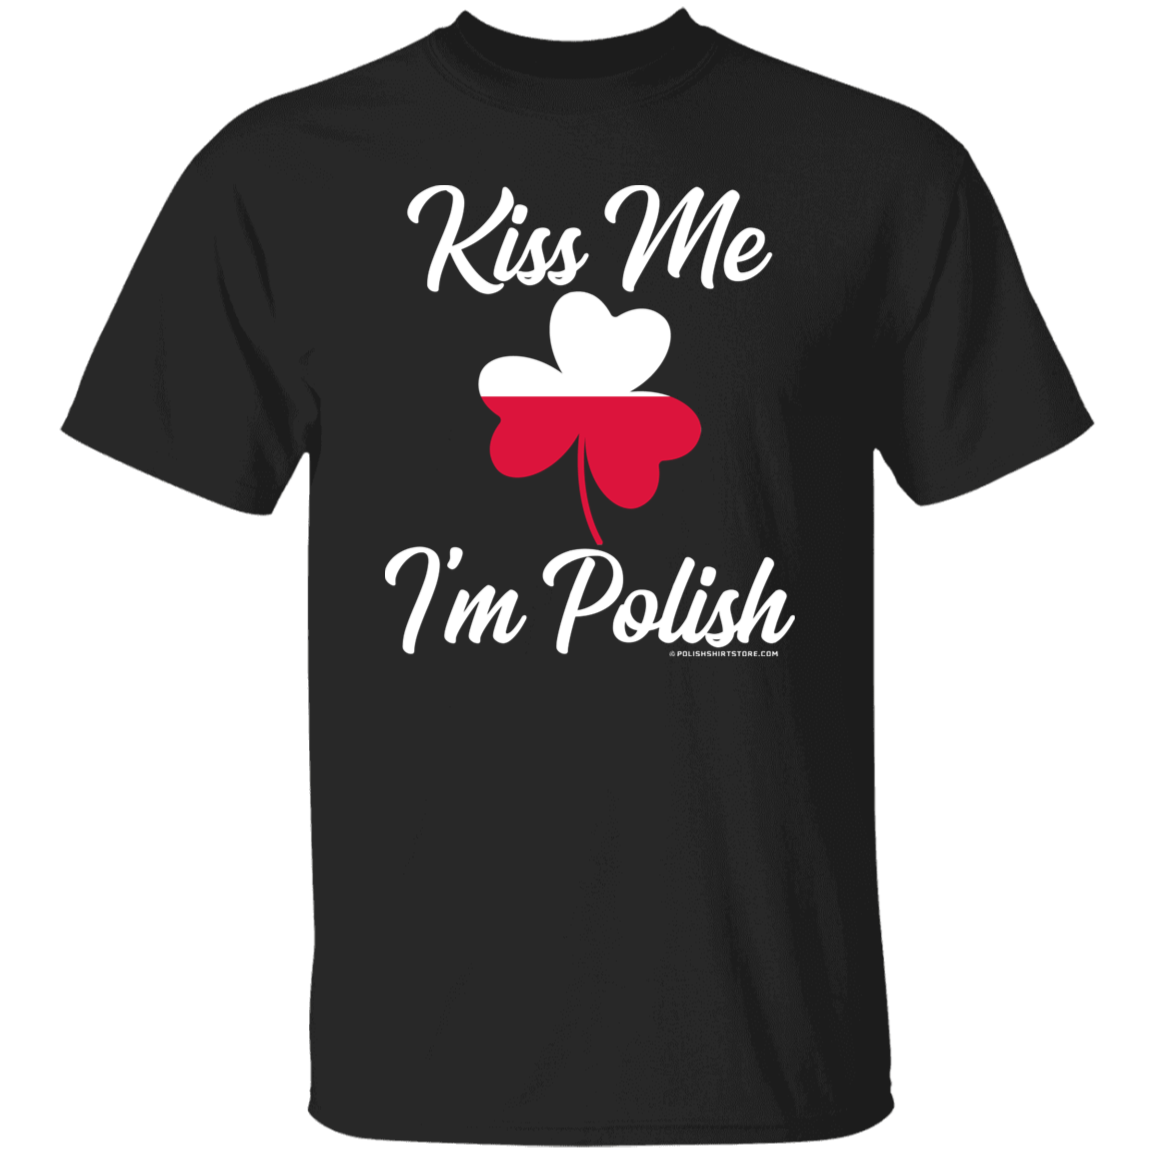 Kiss Me I'm Polish Apparel CustomCat G500 5.3 oz. T-Shirt Black S